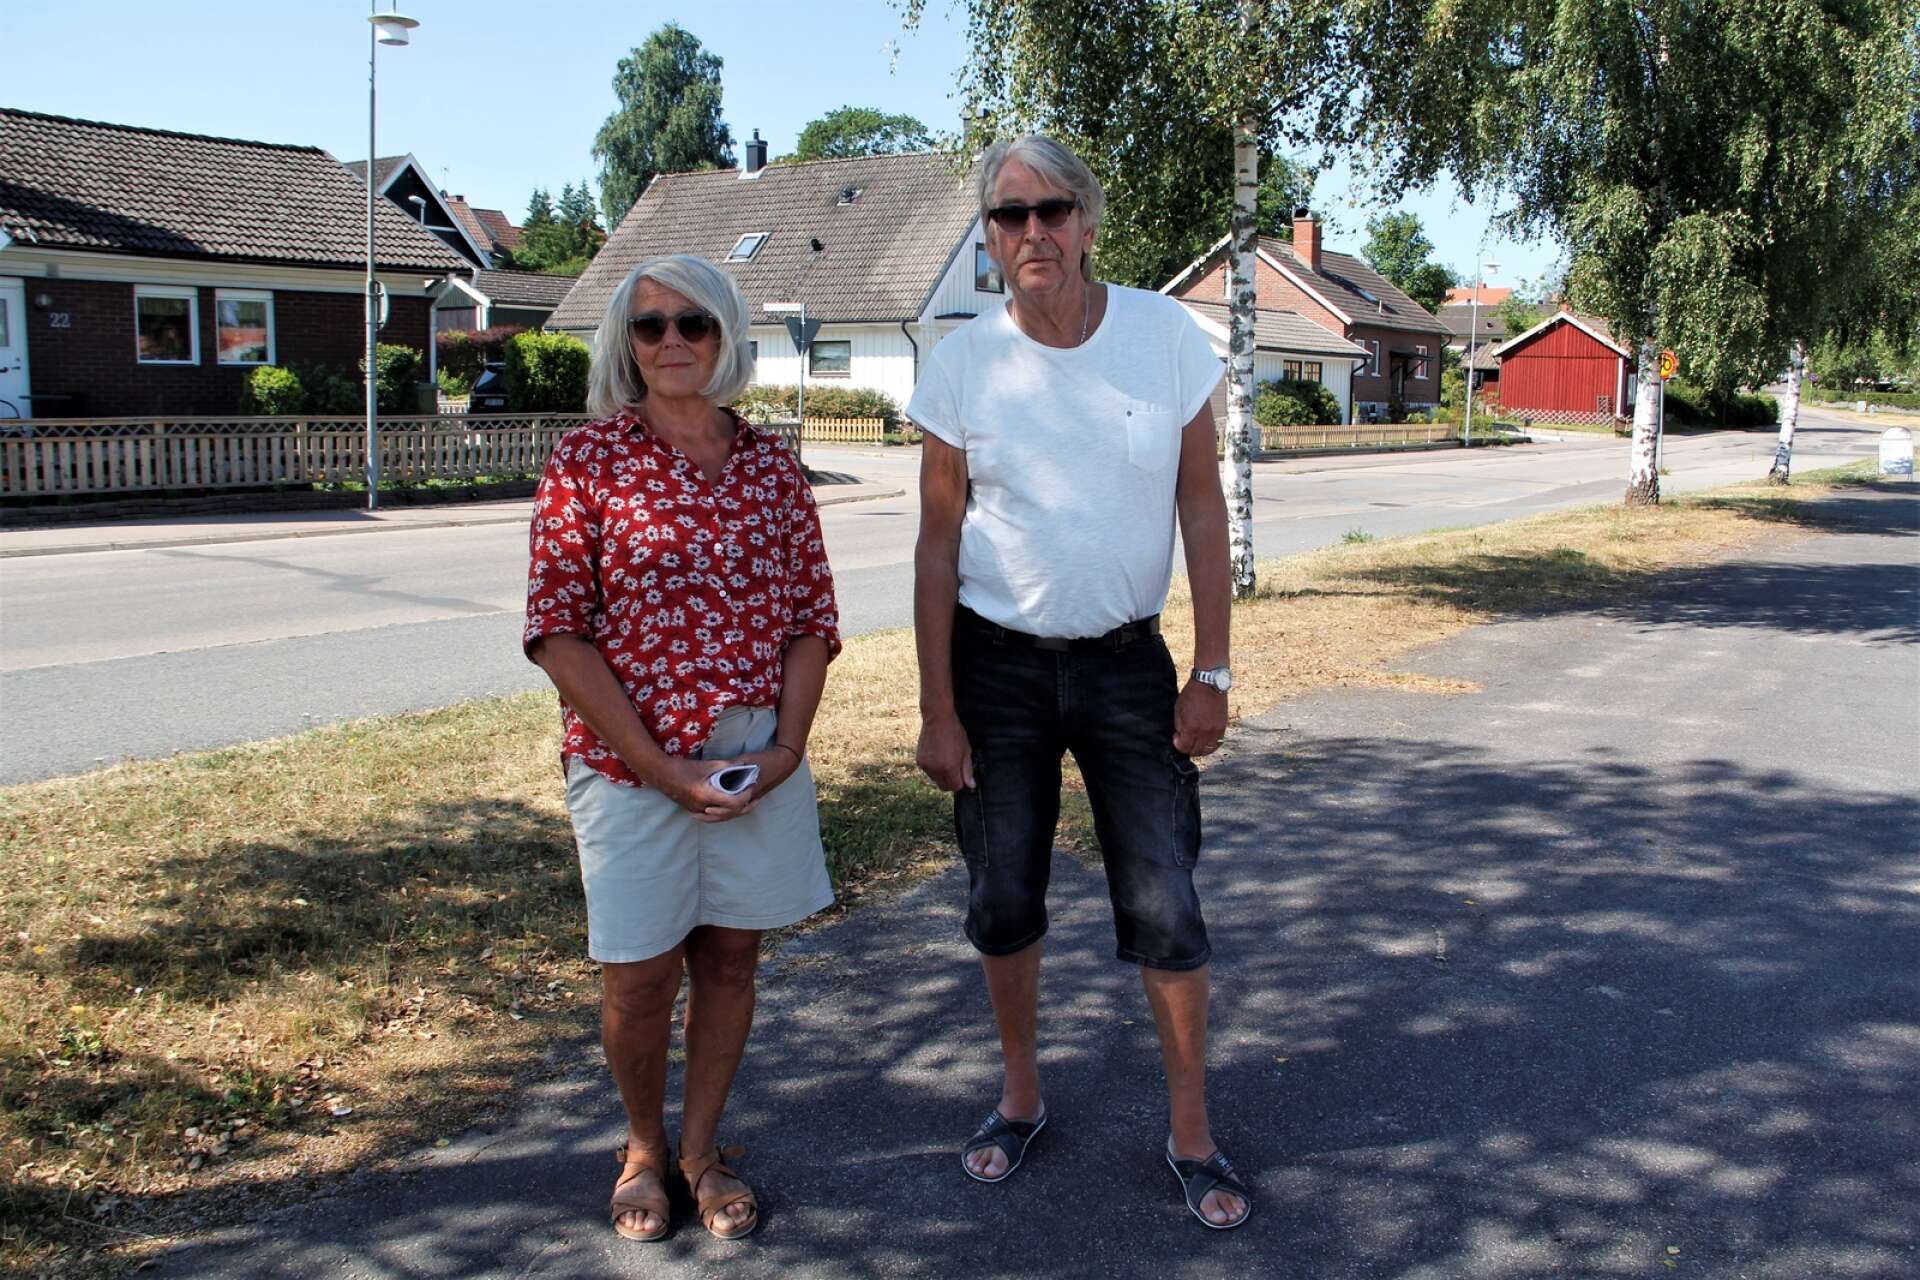 När vädret var varm och torrt i sommar ökade problemet med att damm blåser in över villakvarteren. Cecilia Höjdén Åhlmans och Håkan Andersson vill ha en konstruktiv dialog med kommunen om hur hamnverksamheten kan bedrivas samtidigt som hälso- och miljöaspekter säkras.